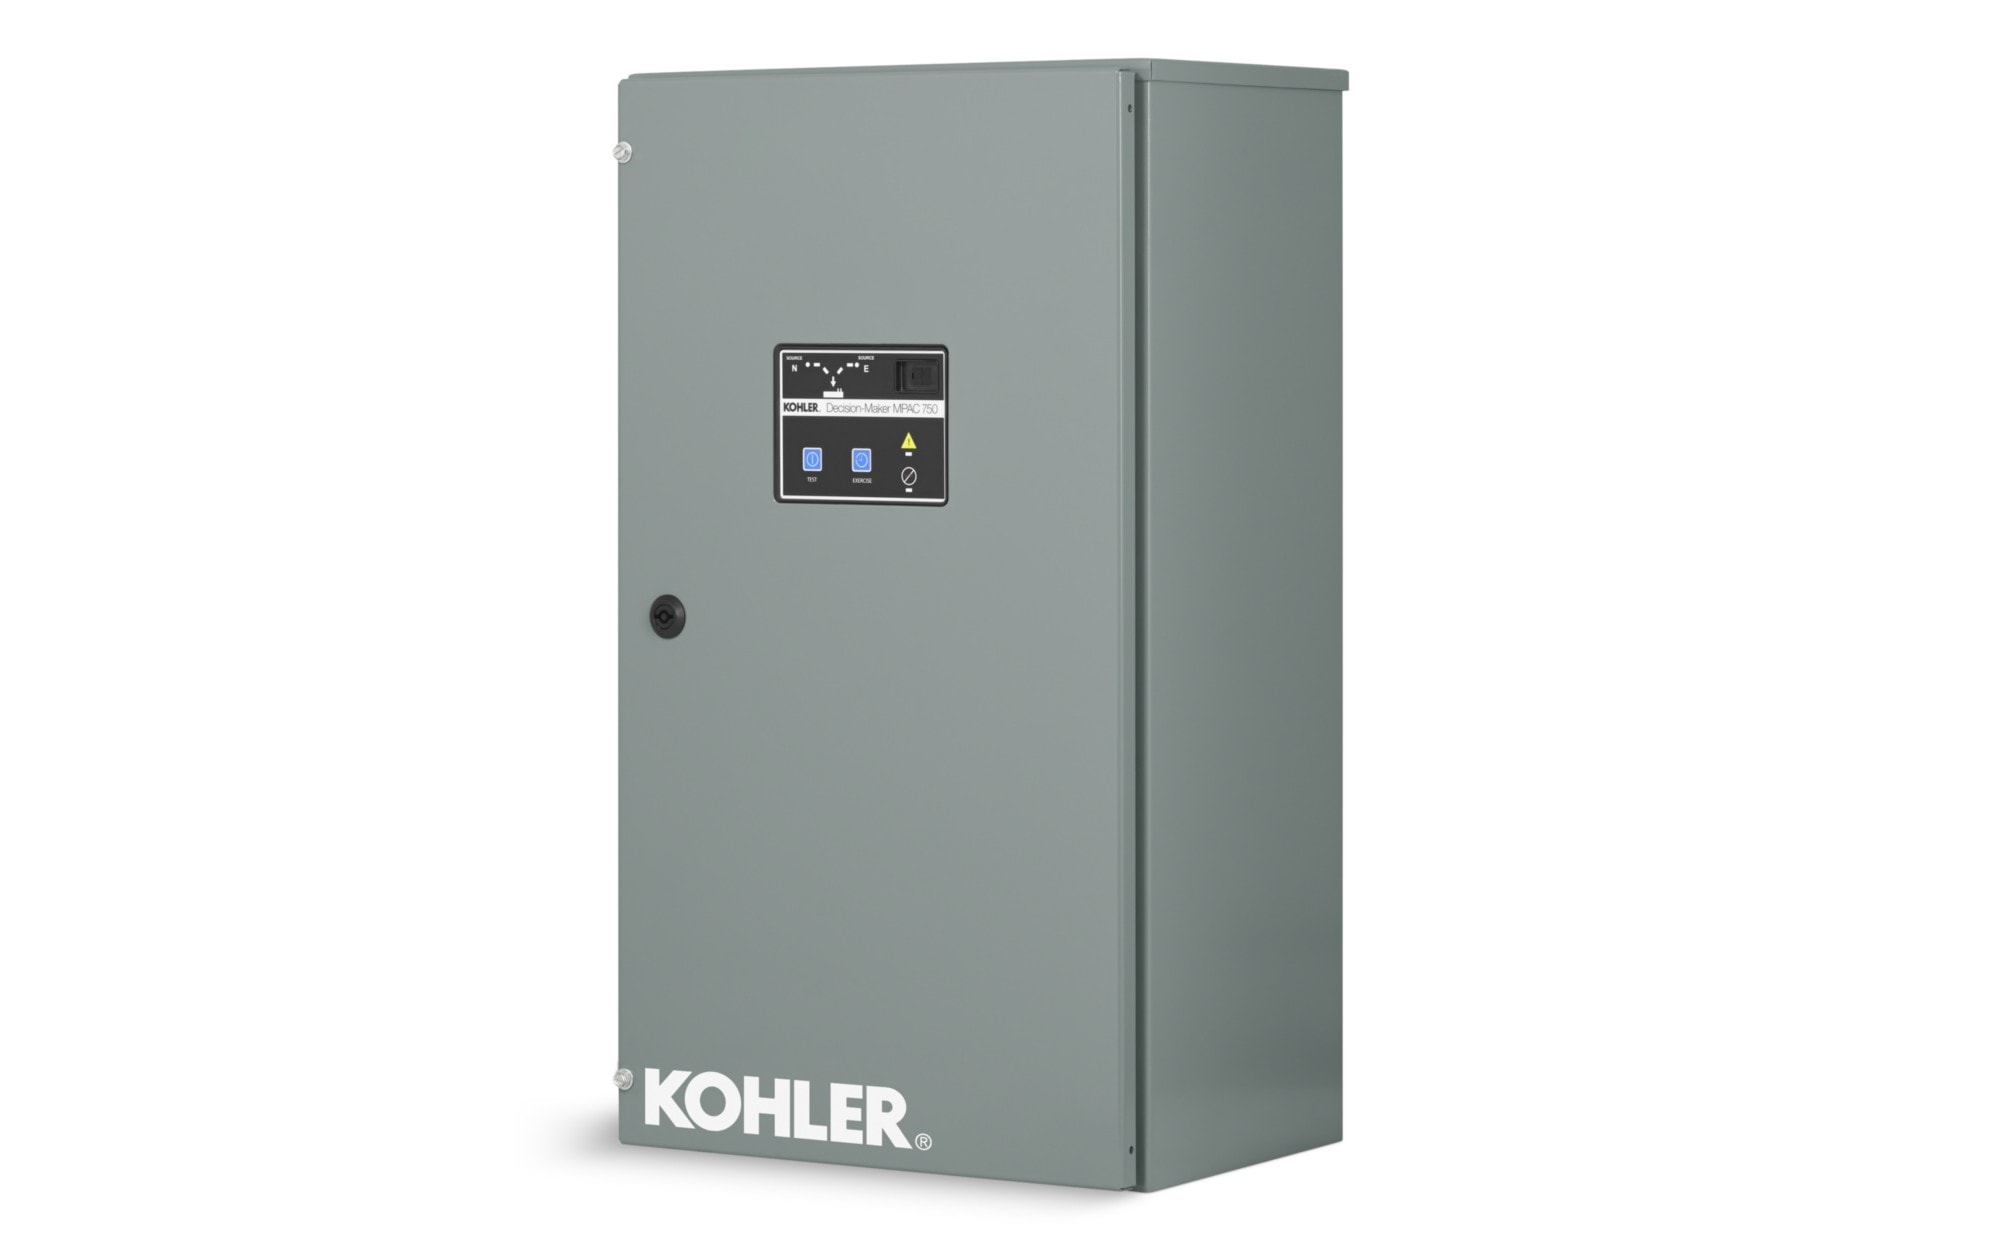 Kohler Industrial Transfer Switch